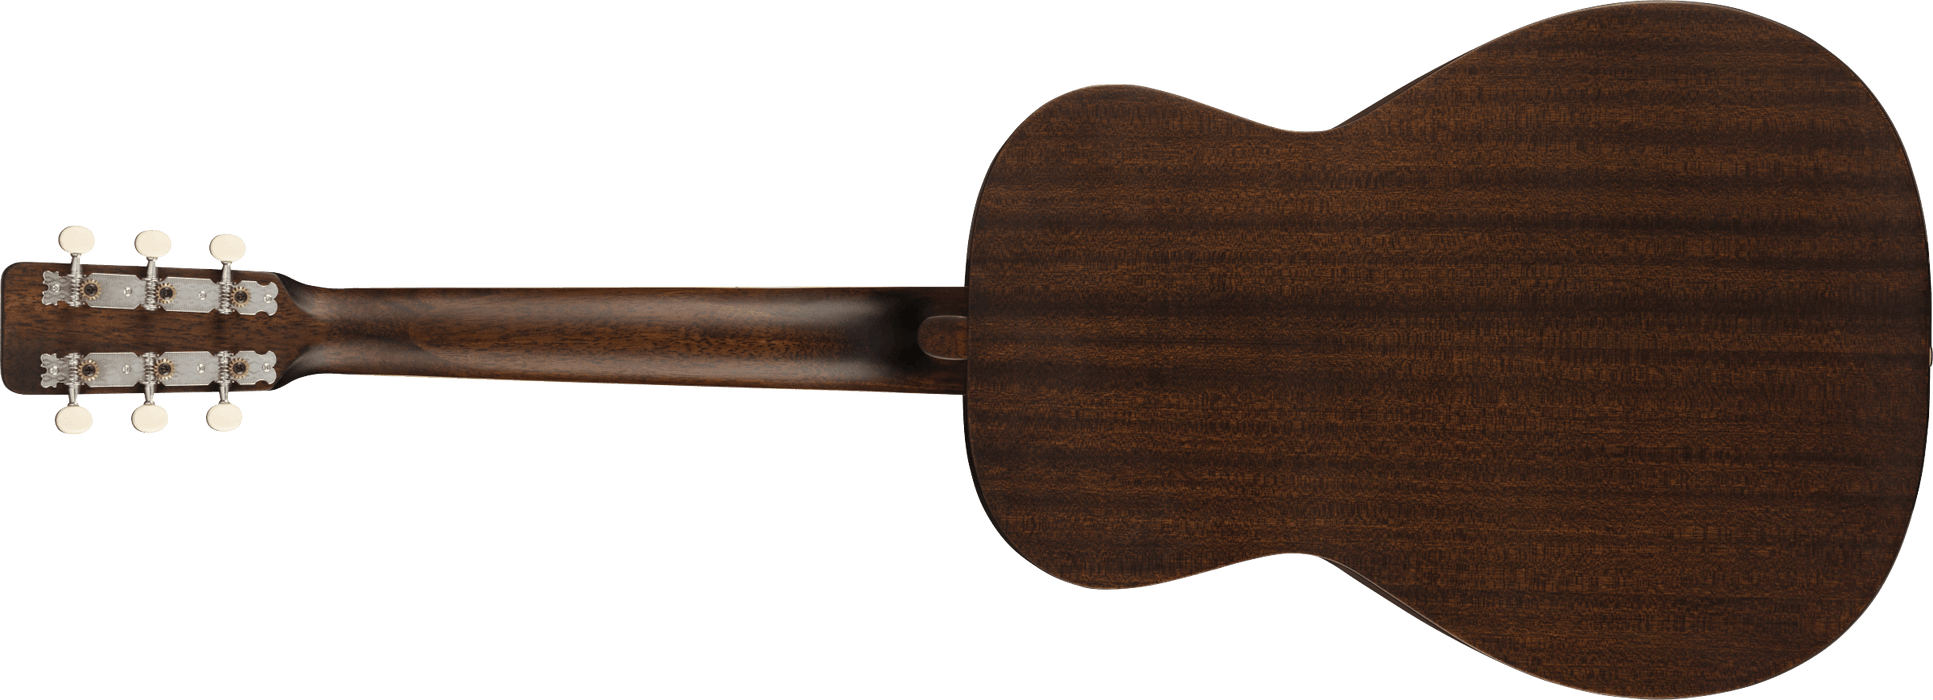 Gretsch G9500 Jim Dandy™, Black Walnut Fingerboard, Frontier Stain